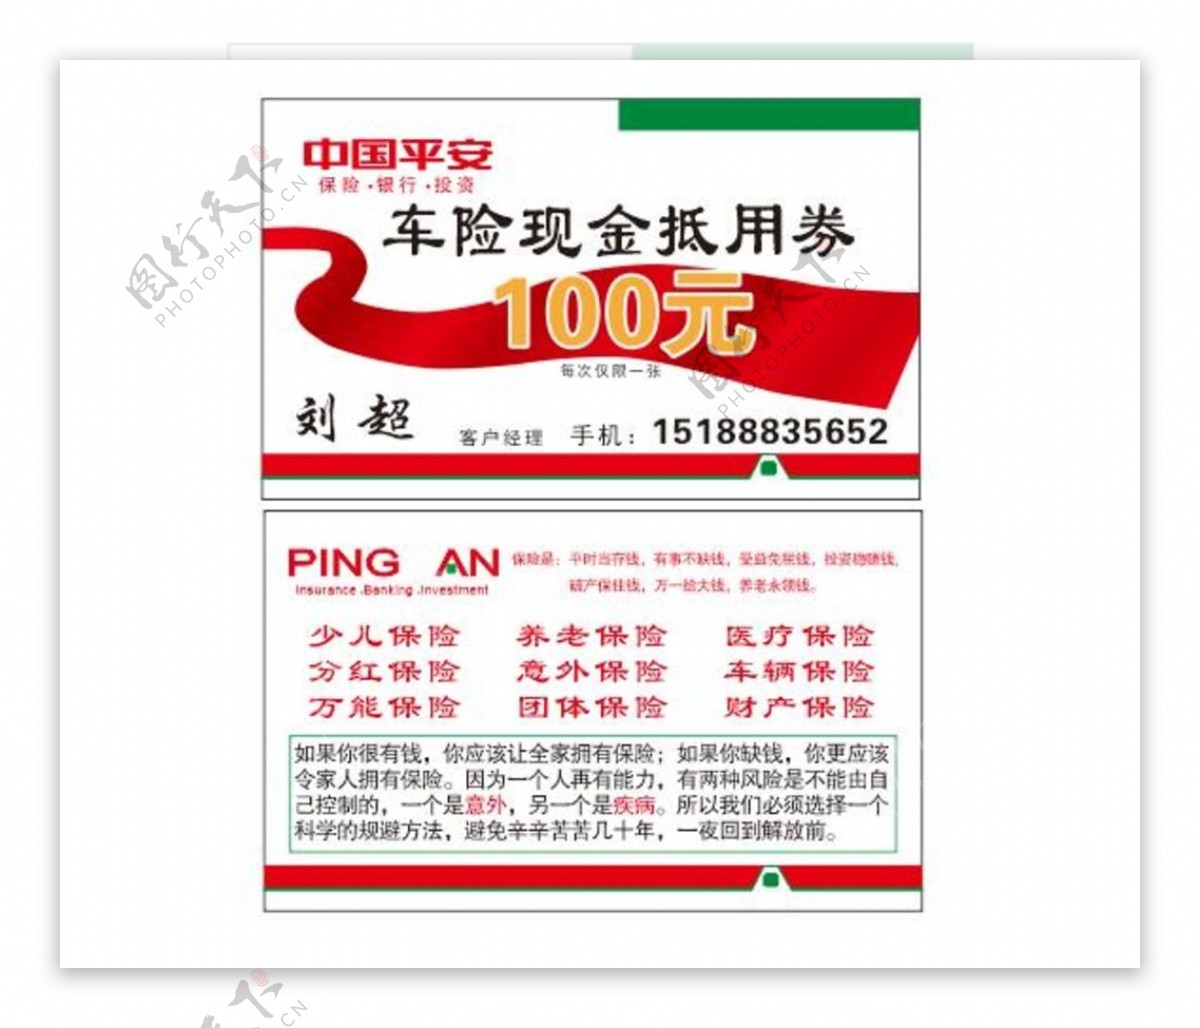 中国平安车险优惠100元名片